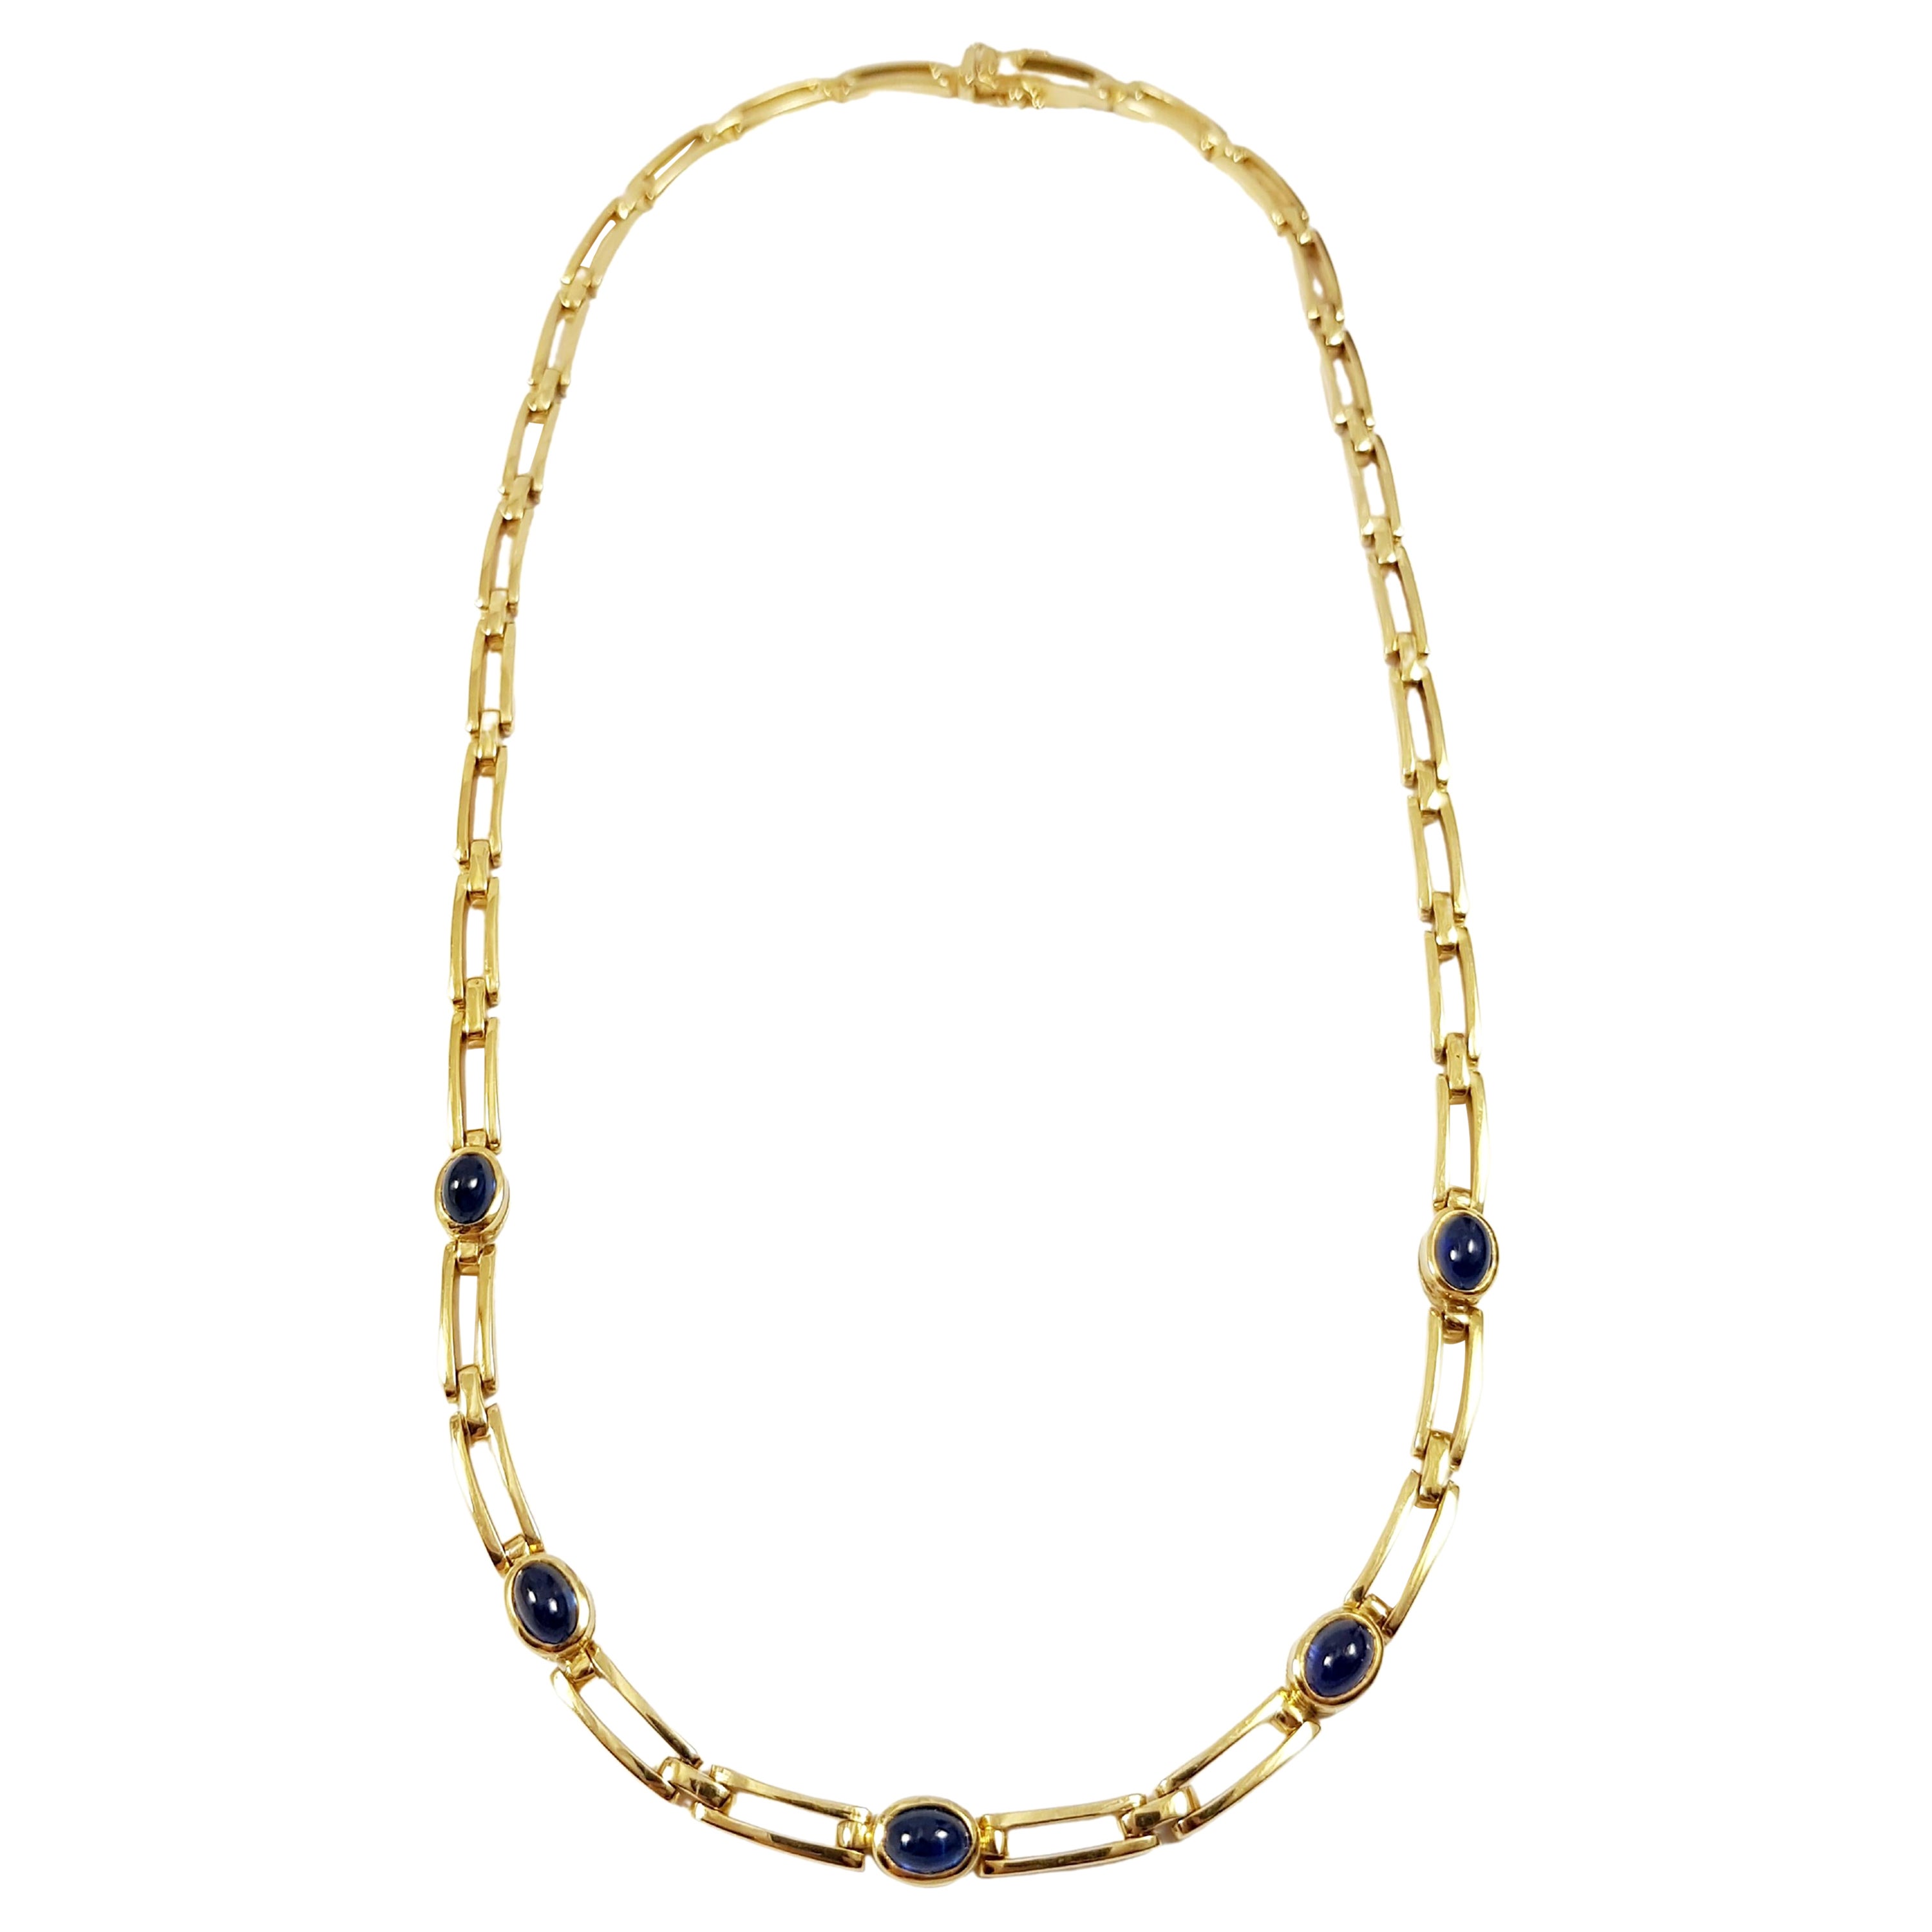 Halskette mit blauem Cabochon-Saphir in 18 Karat Goldfassungen